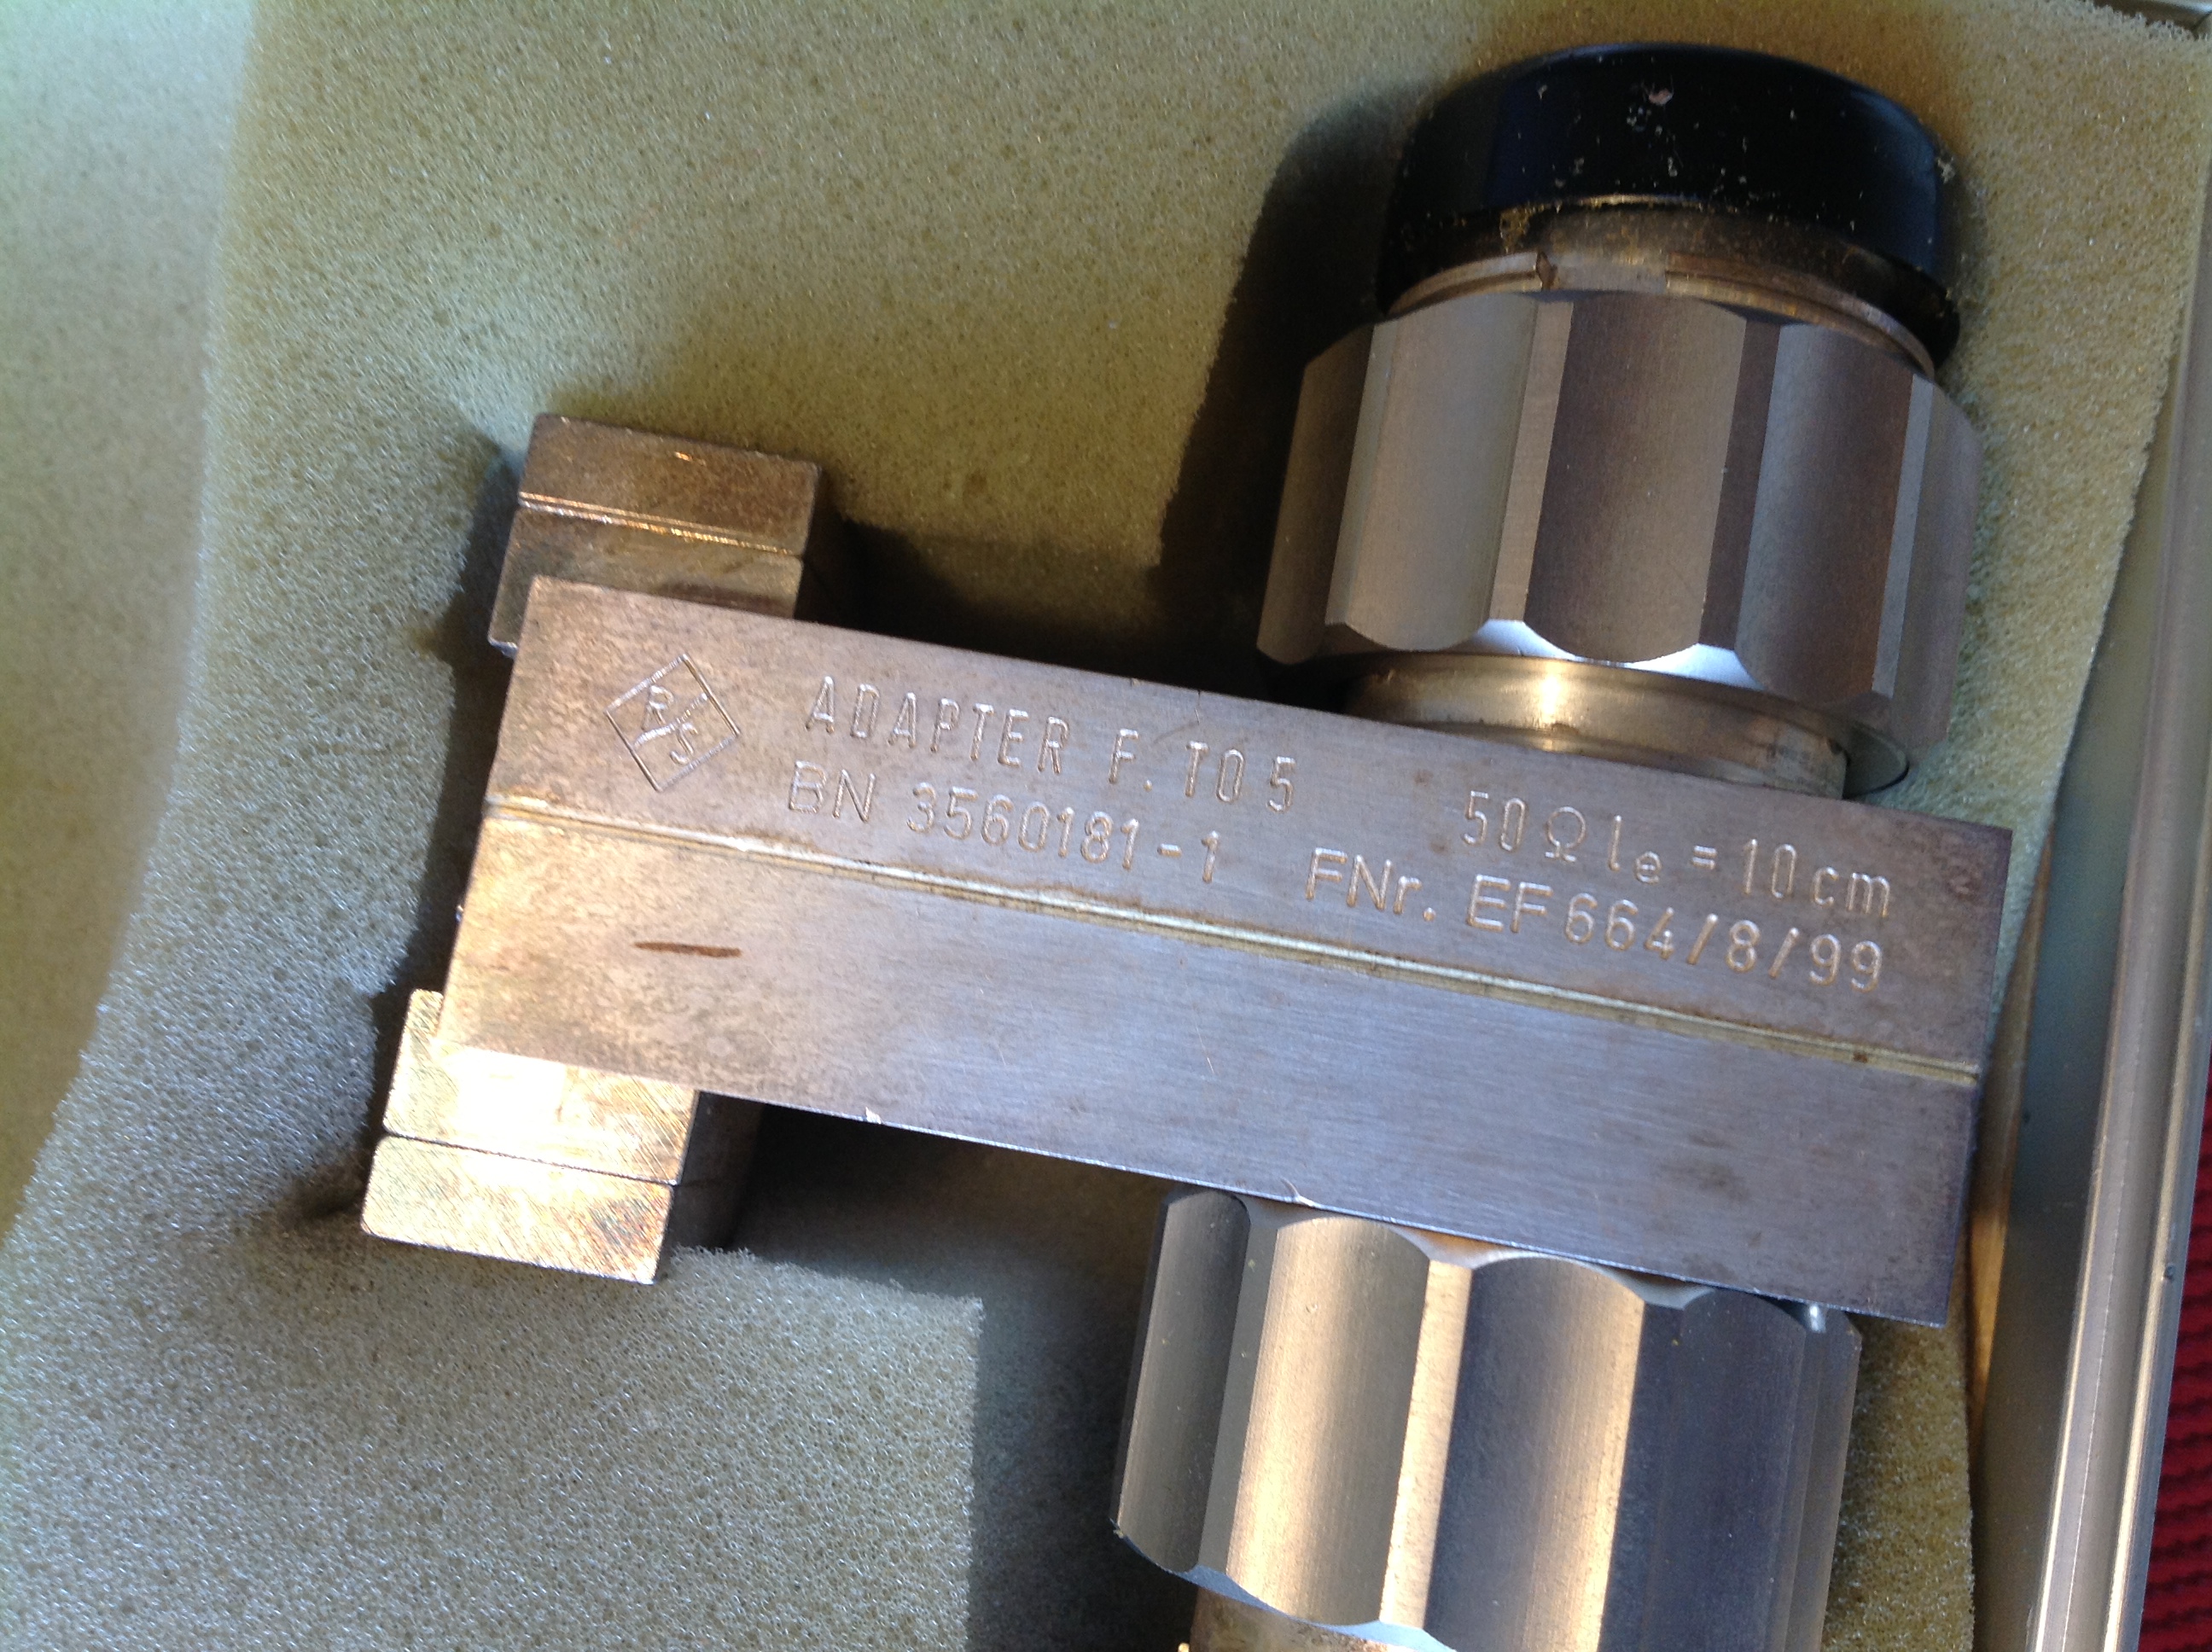 Rohde &amp; Schwarz Transistor-Adapter und Zubehör BN 3560181